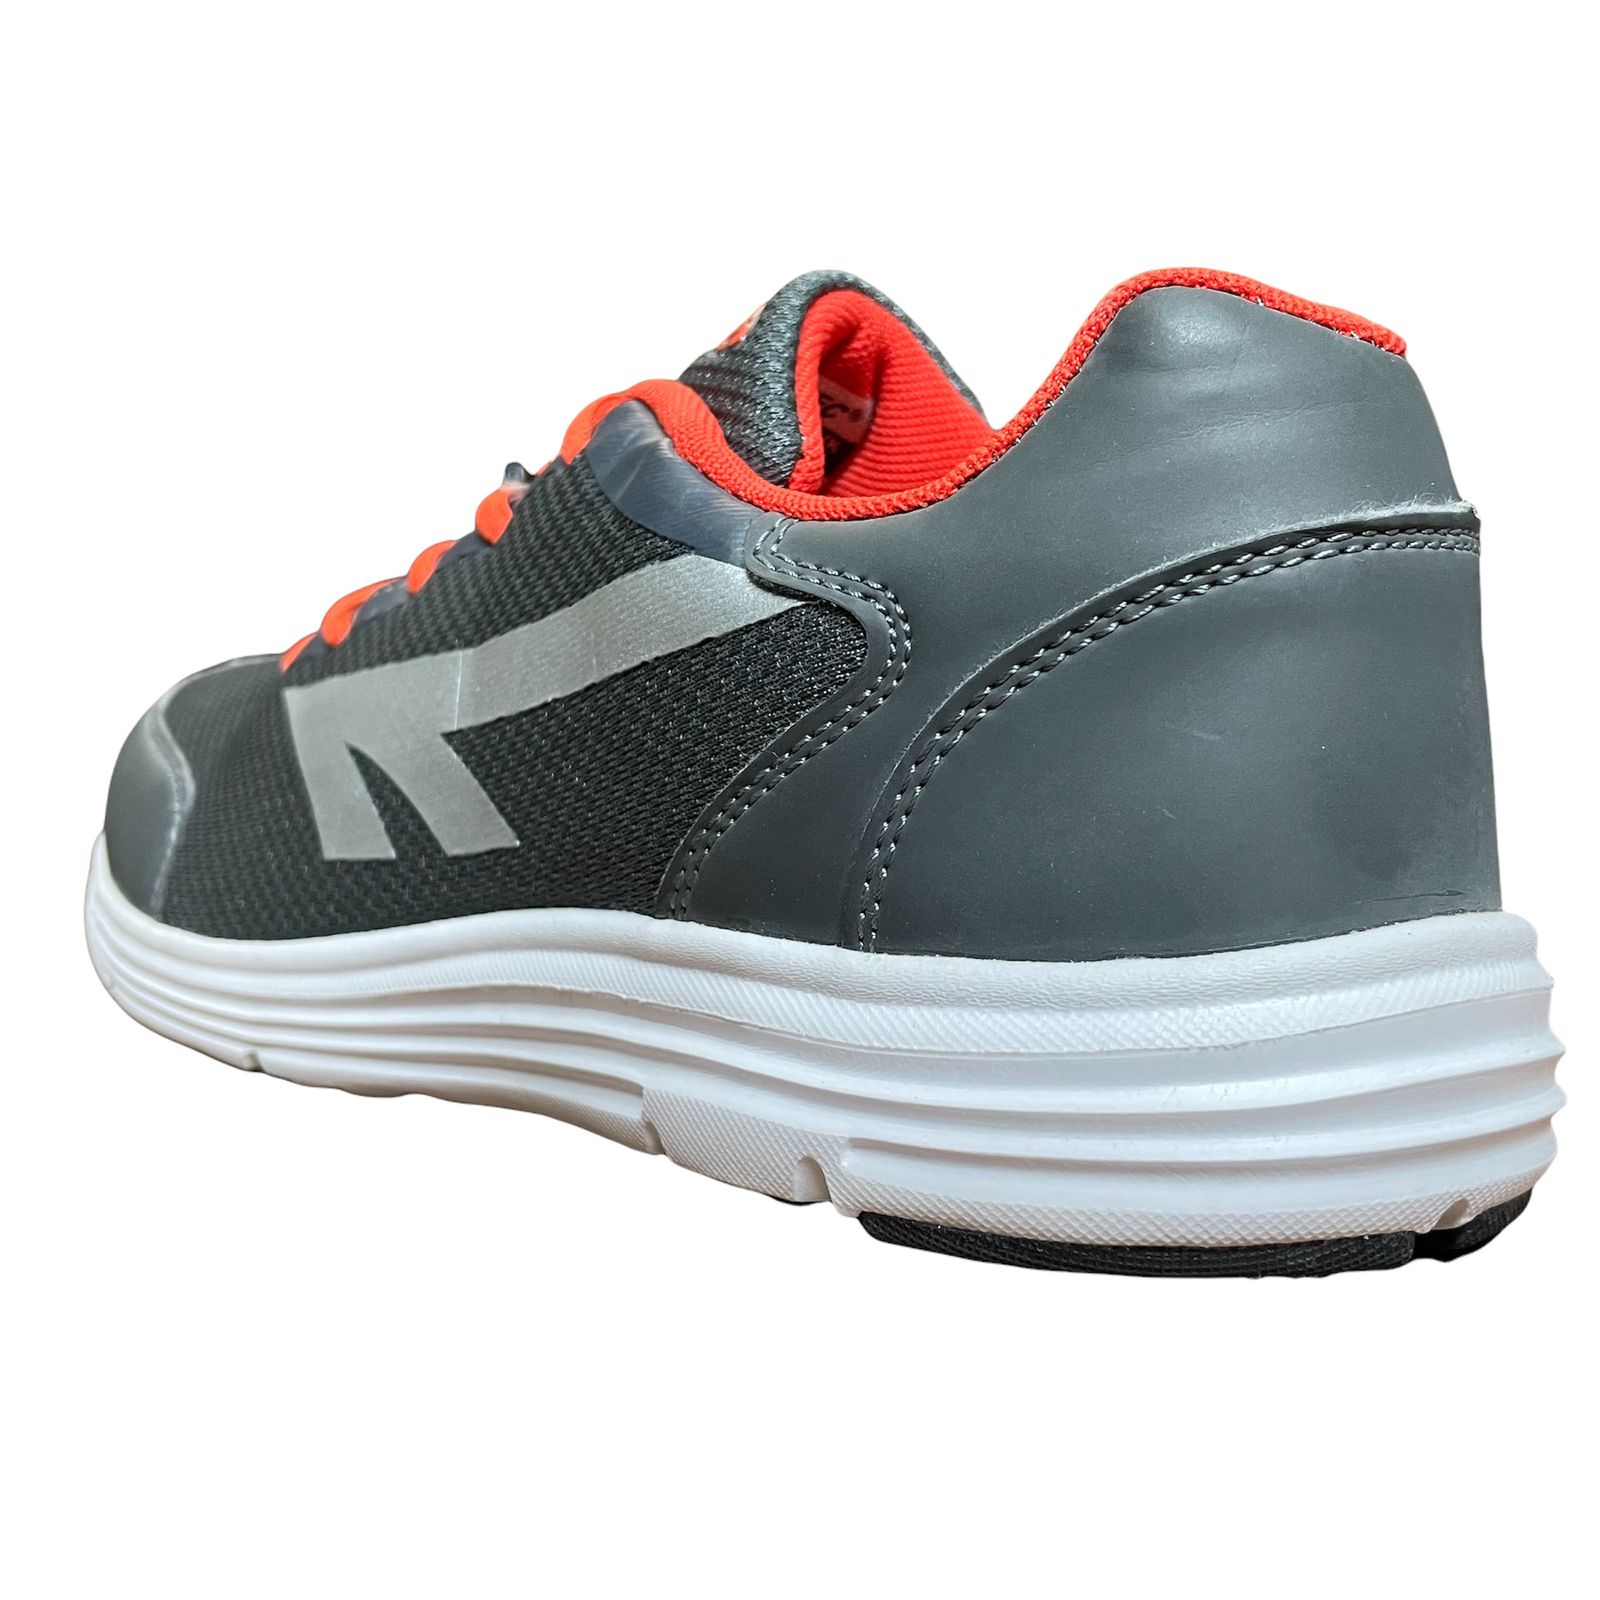 کفش پیاده روی مردانه های-تک مدل A005034-021-01 -  - 5